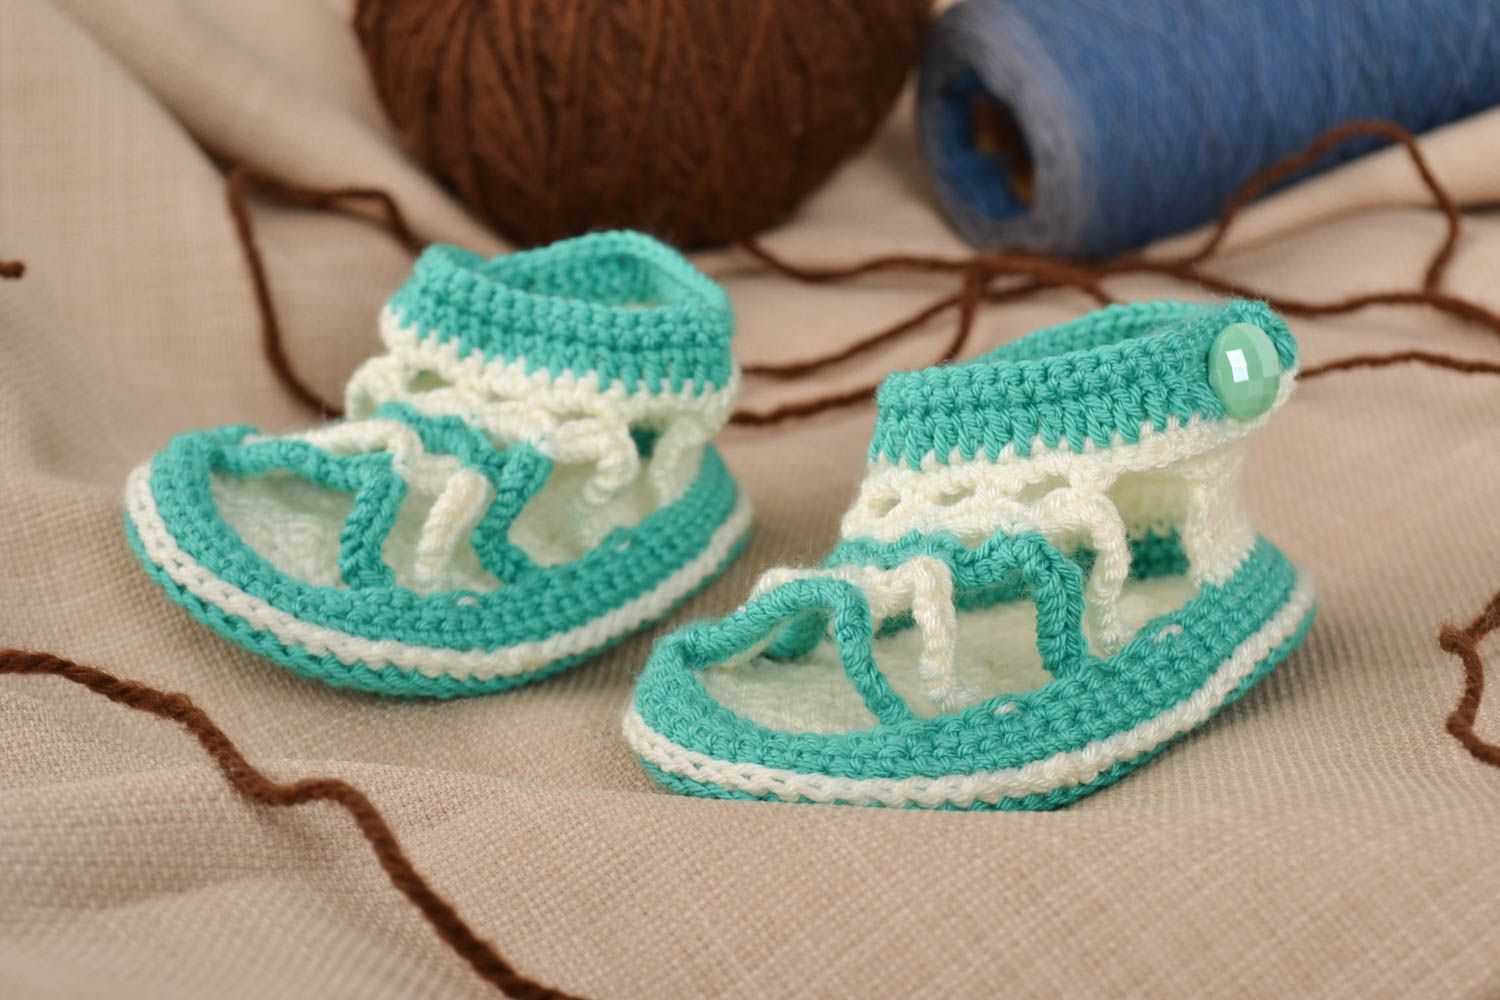 Chaussons bébé fait main tricotés au crochet blanc-turquoise Chaussures bébé photo 1